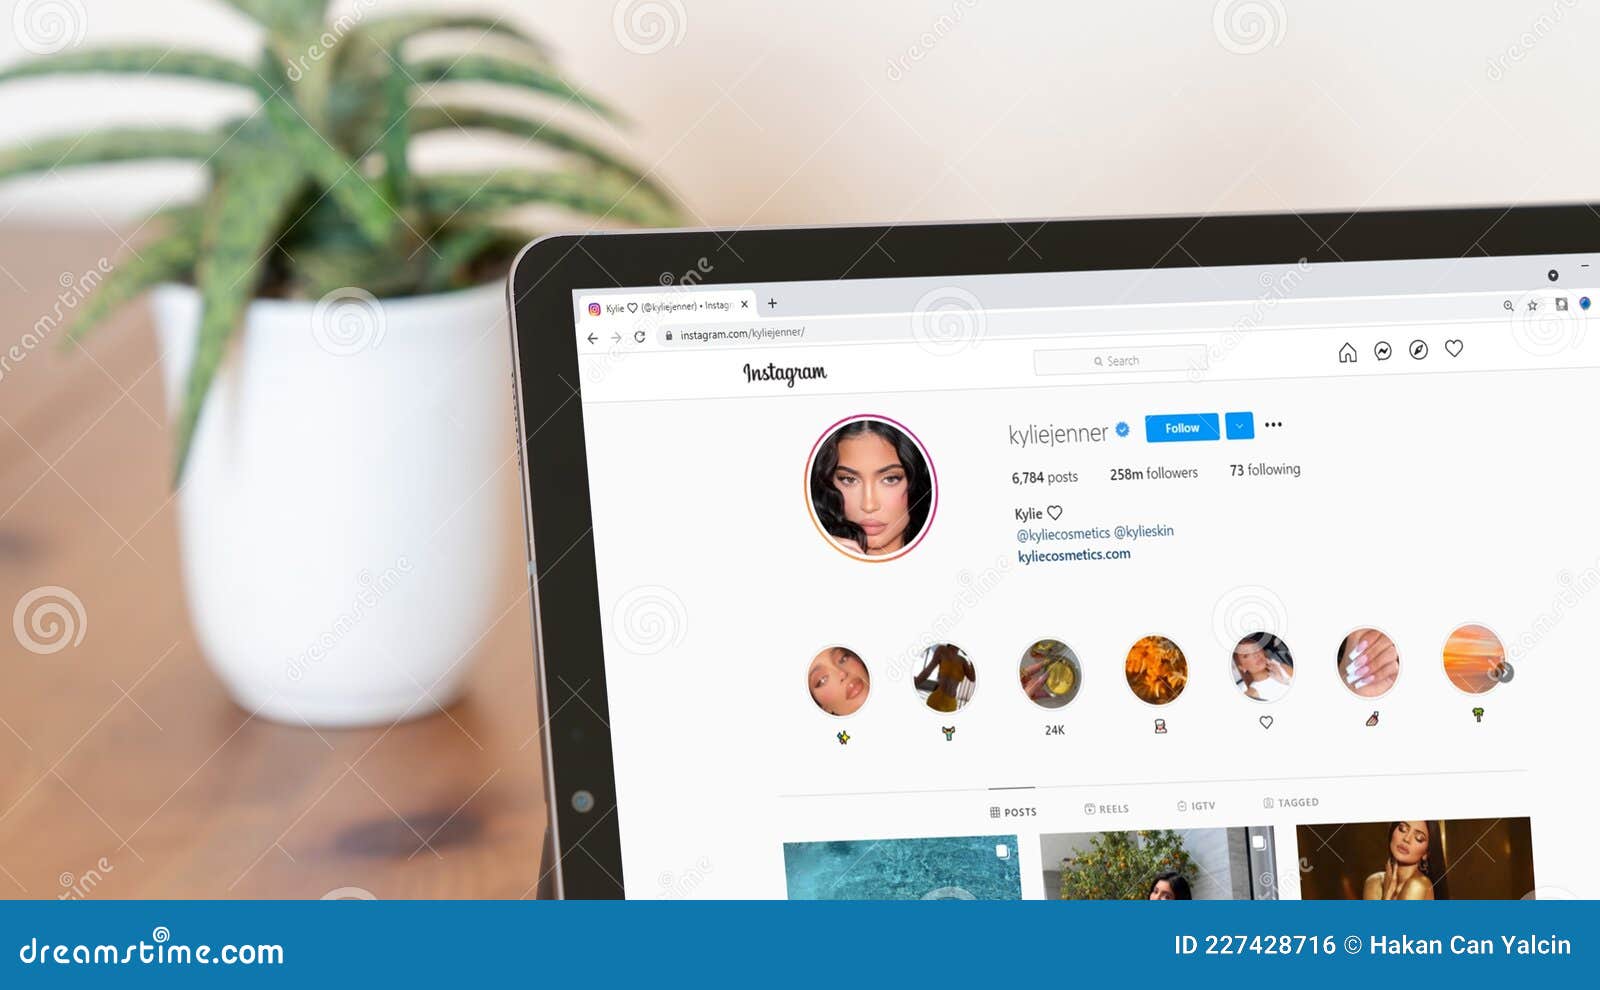 Để thành công trên Instagram, cần phải xây dựng một hồ sơ đầy đủ với hàng triệu người hâm mộ. Hãy xem trang Instagram của Kylie Jenner và tìm hiểu cách để trở thành một trong những người nổi tiếng trên Instagram. Hợp tác với những người bạn có cùng sở thích, tham gia các cuộc thi trên Instagram và thường xuyên chia sẻ những hình ảnh đẹp của bạn.